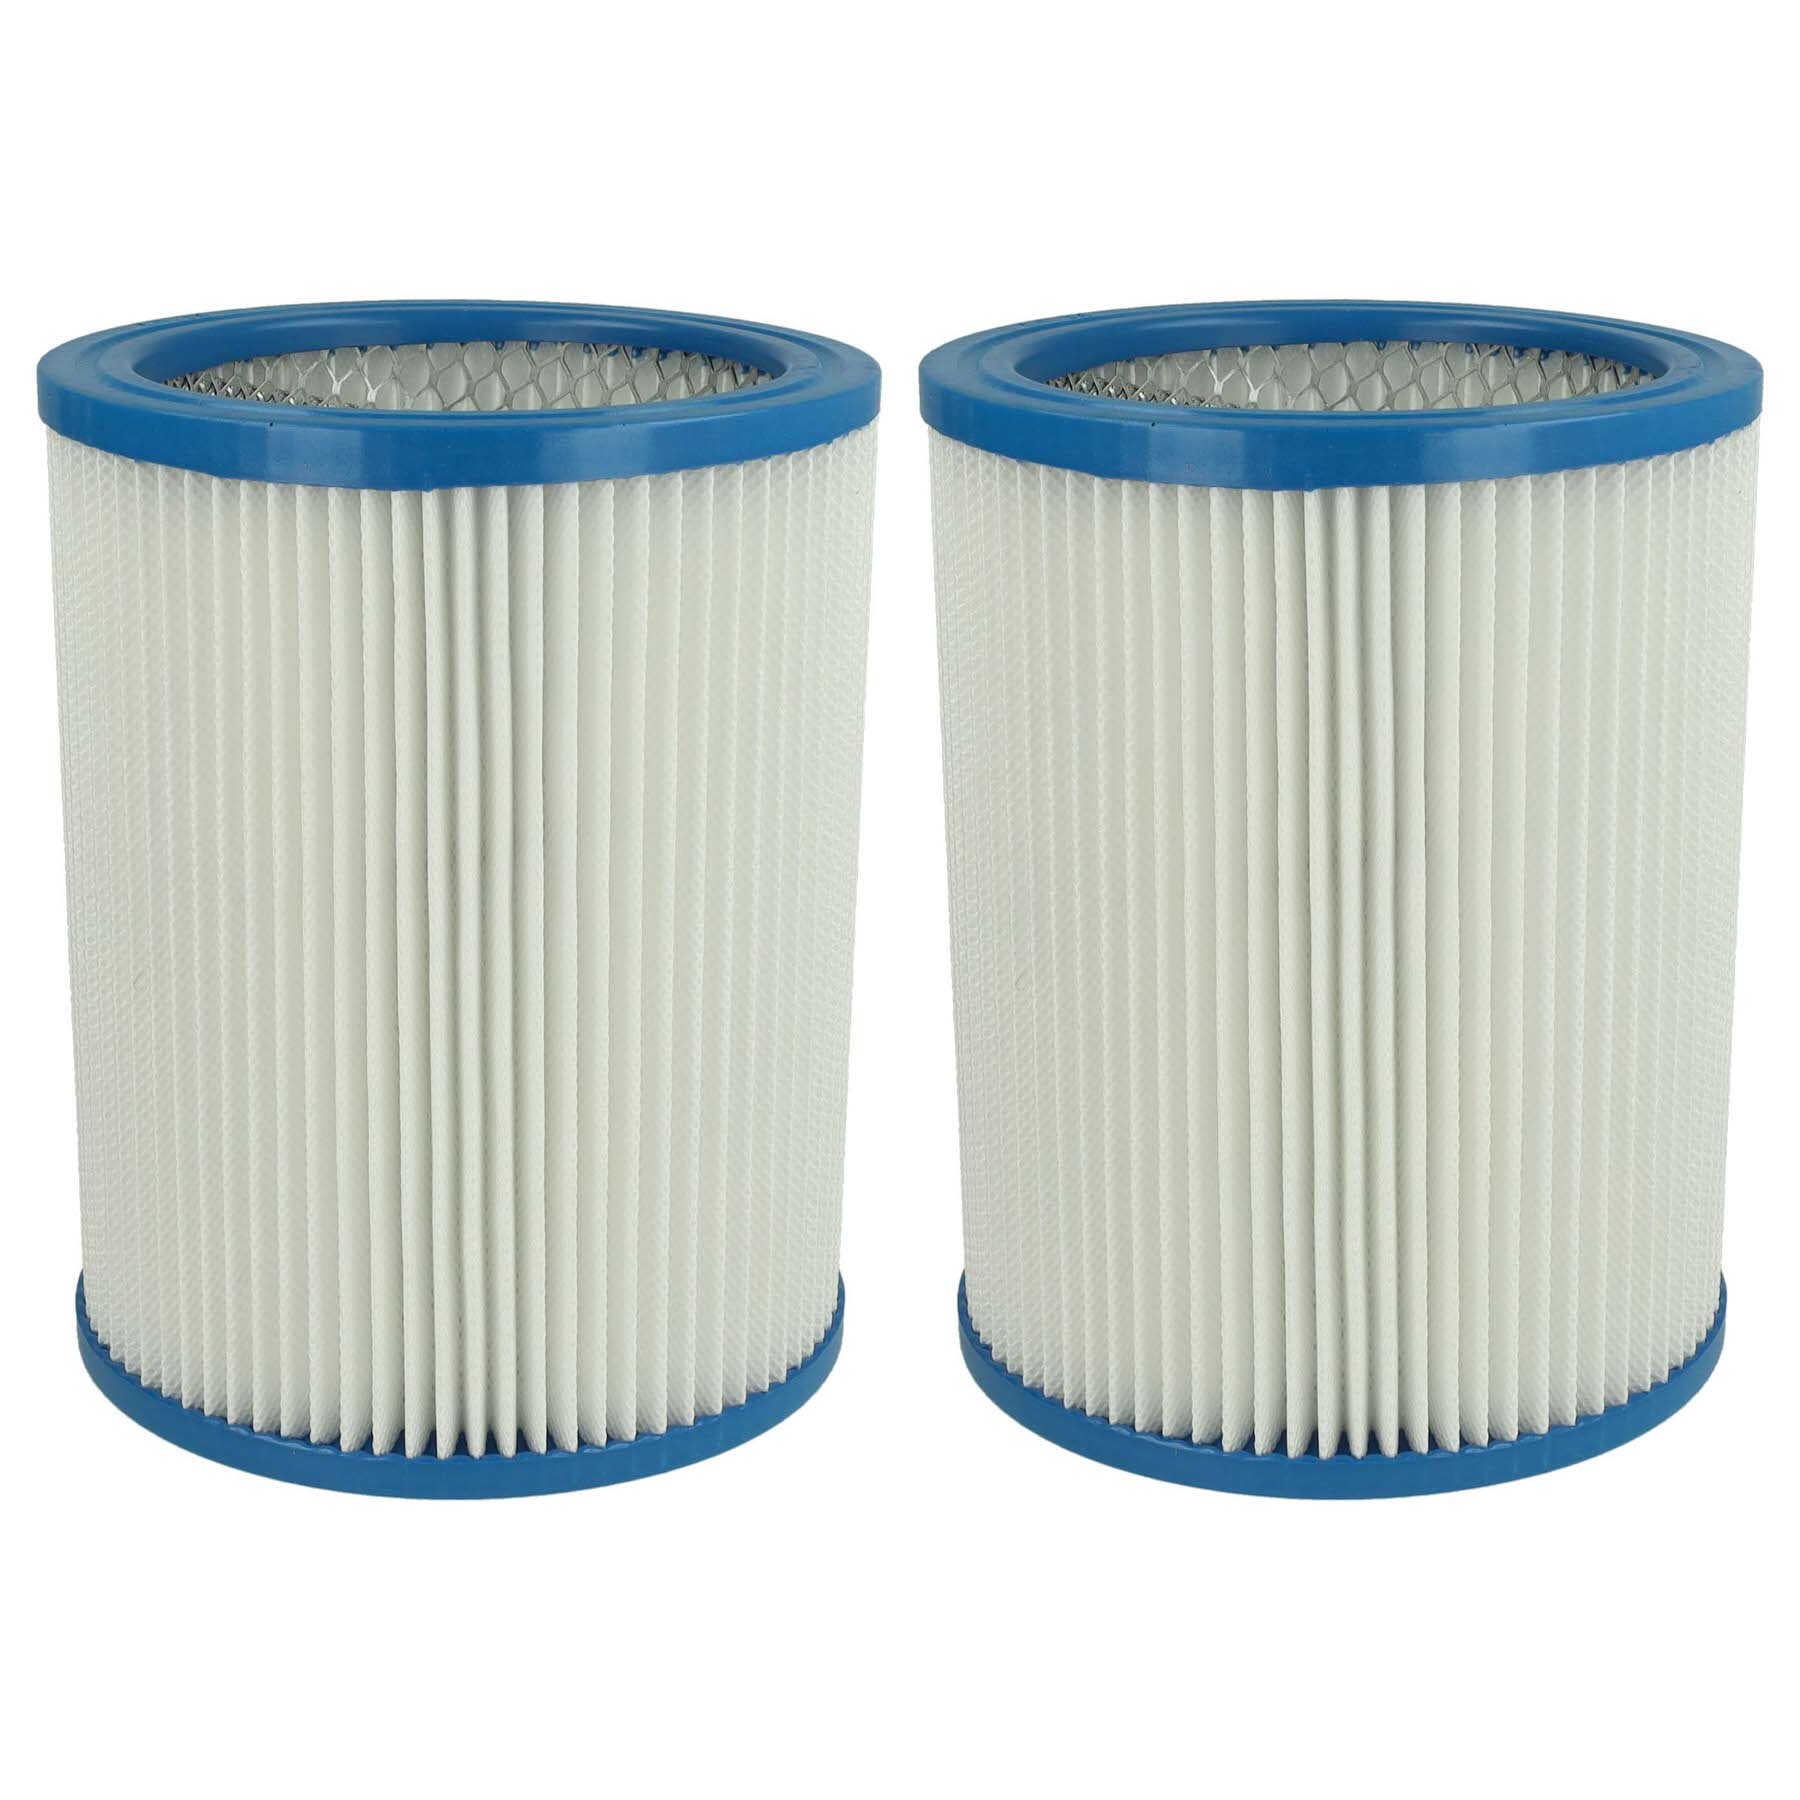 Vhbw Lot de 2x filtres à cartouche compatible avec Fein Dustex 25, 40  aspirateur à sec ou humide - Filtre plissé, papier / plastique, blanc